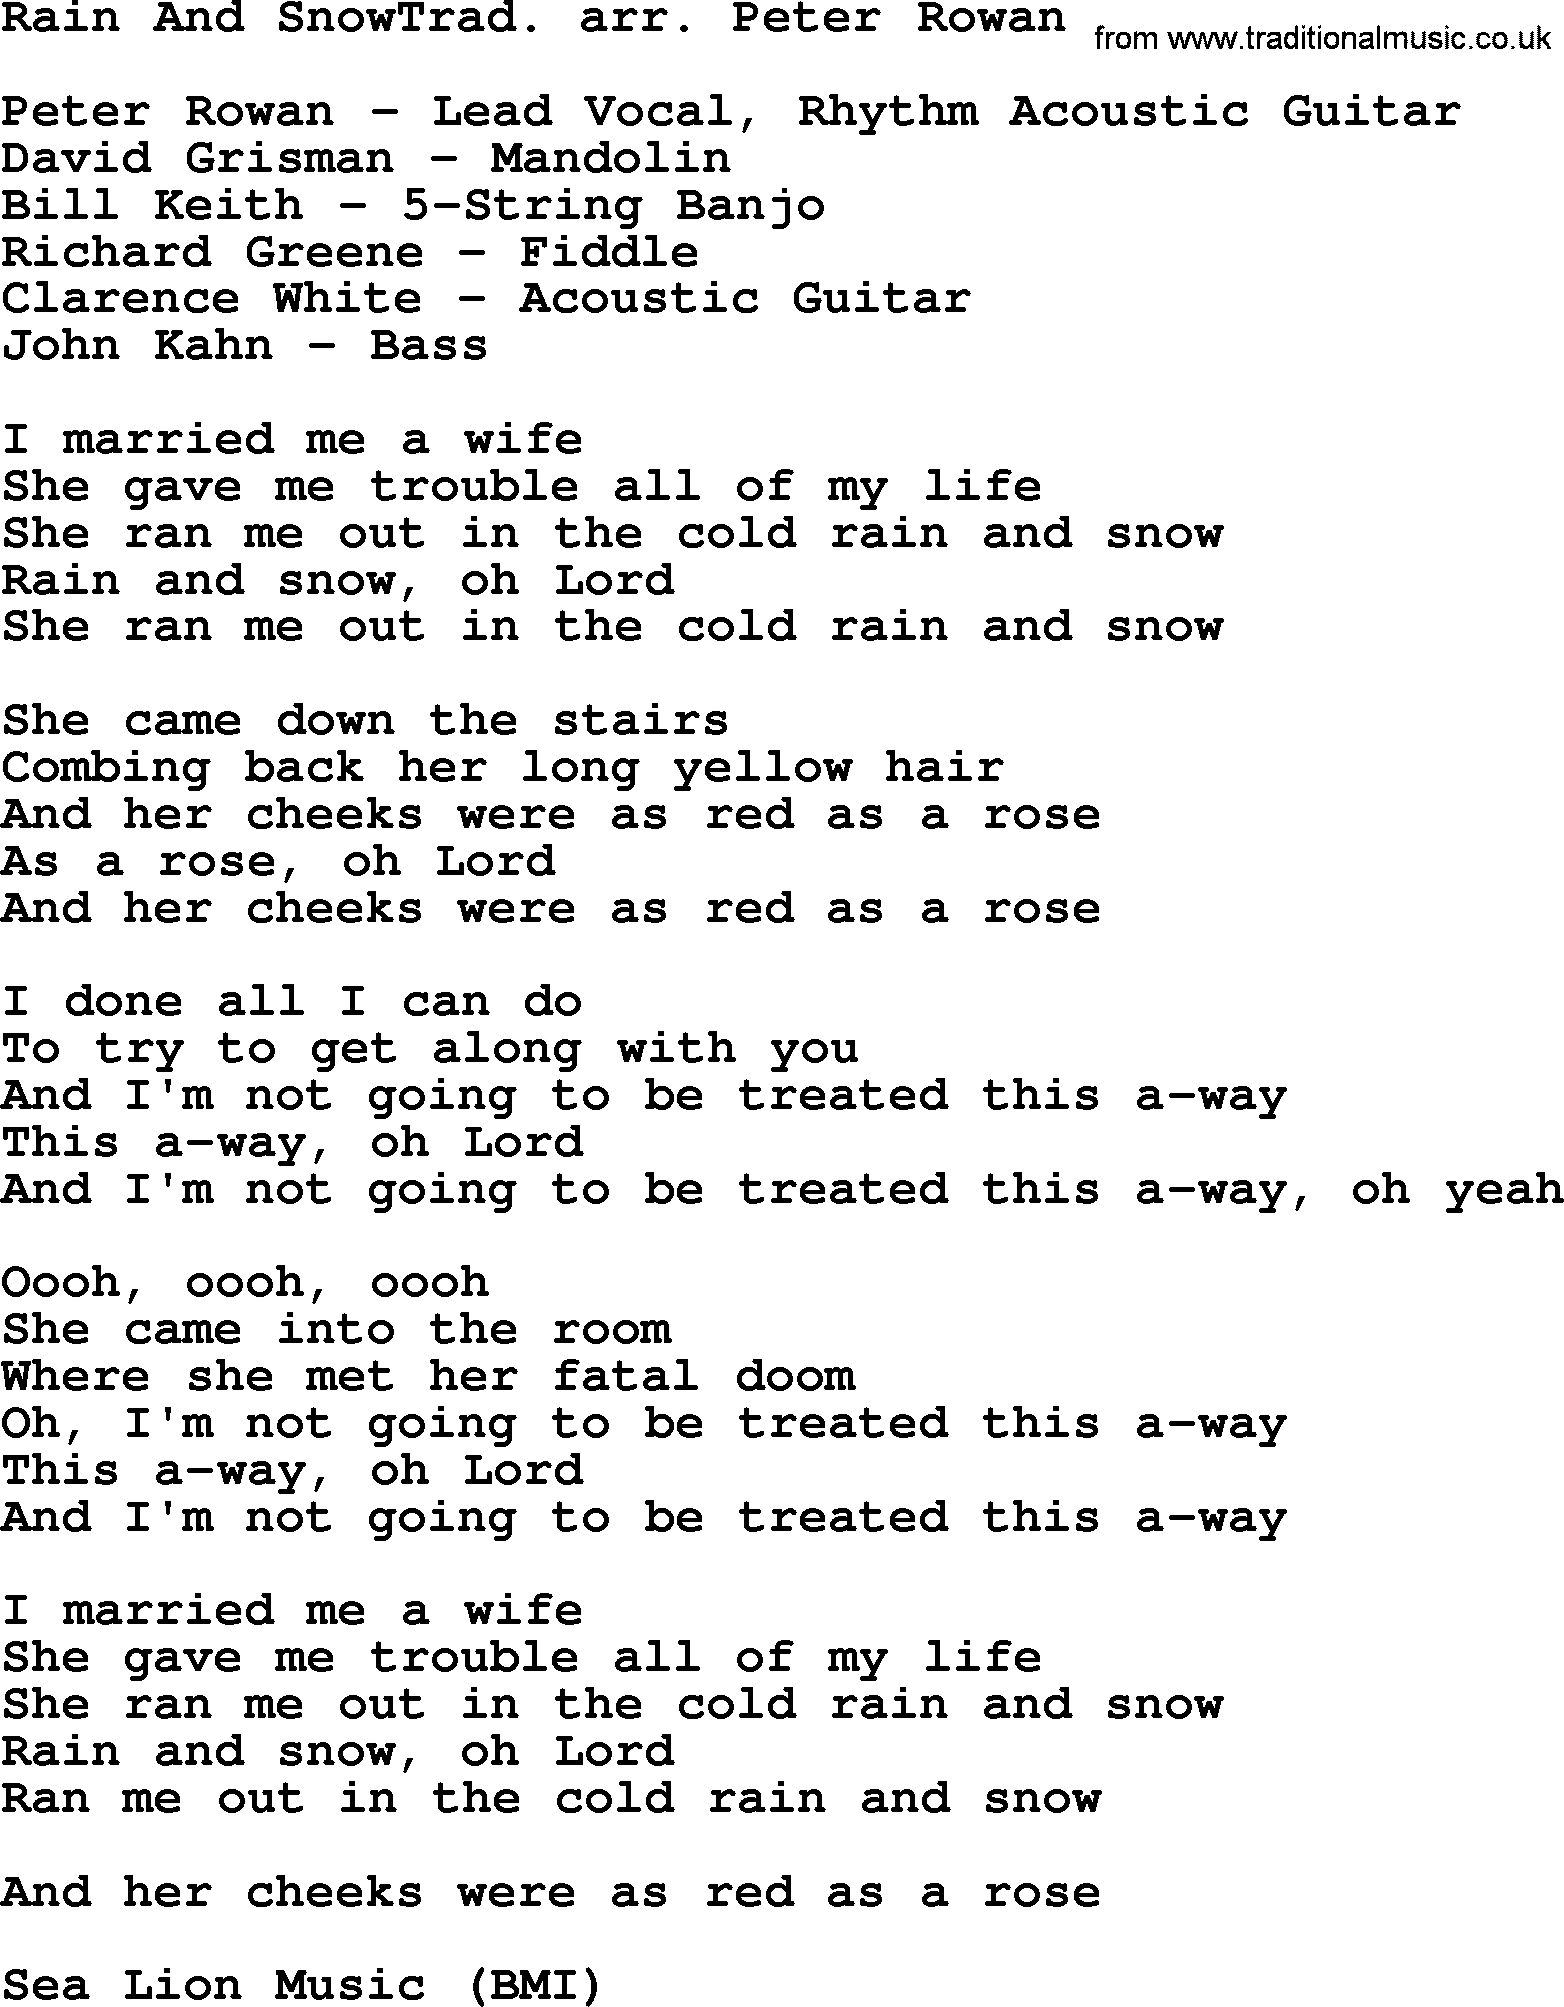 The Byrds song Rain And Snowtrad  Arr  Peter Rowan, lyrics